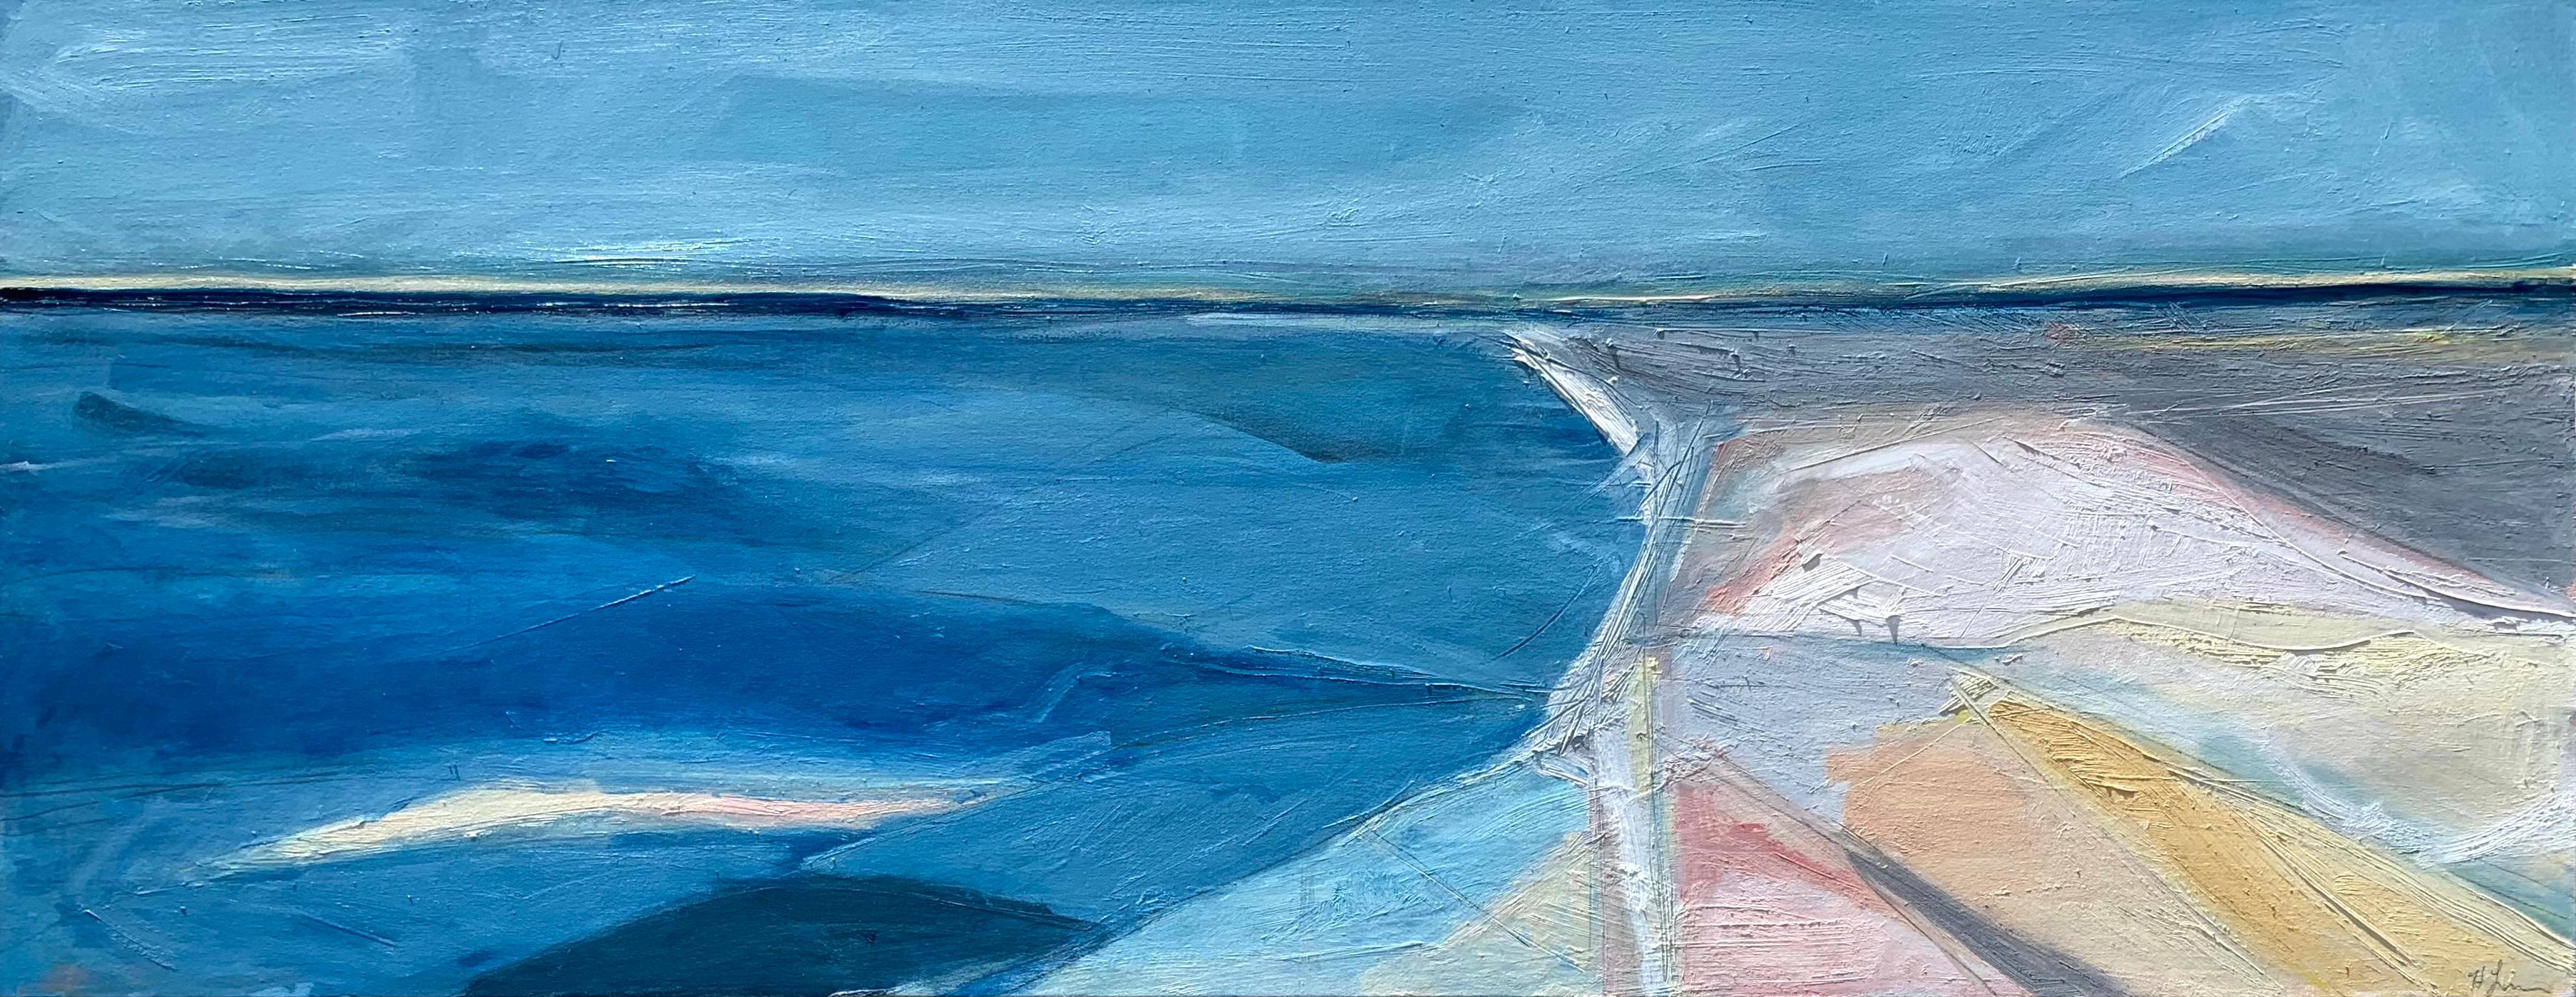 Landscape Painting Heidi Lanino - Paysage marin, grande peinture à l'huile sur toile en bleu